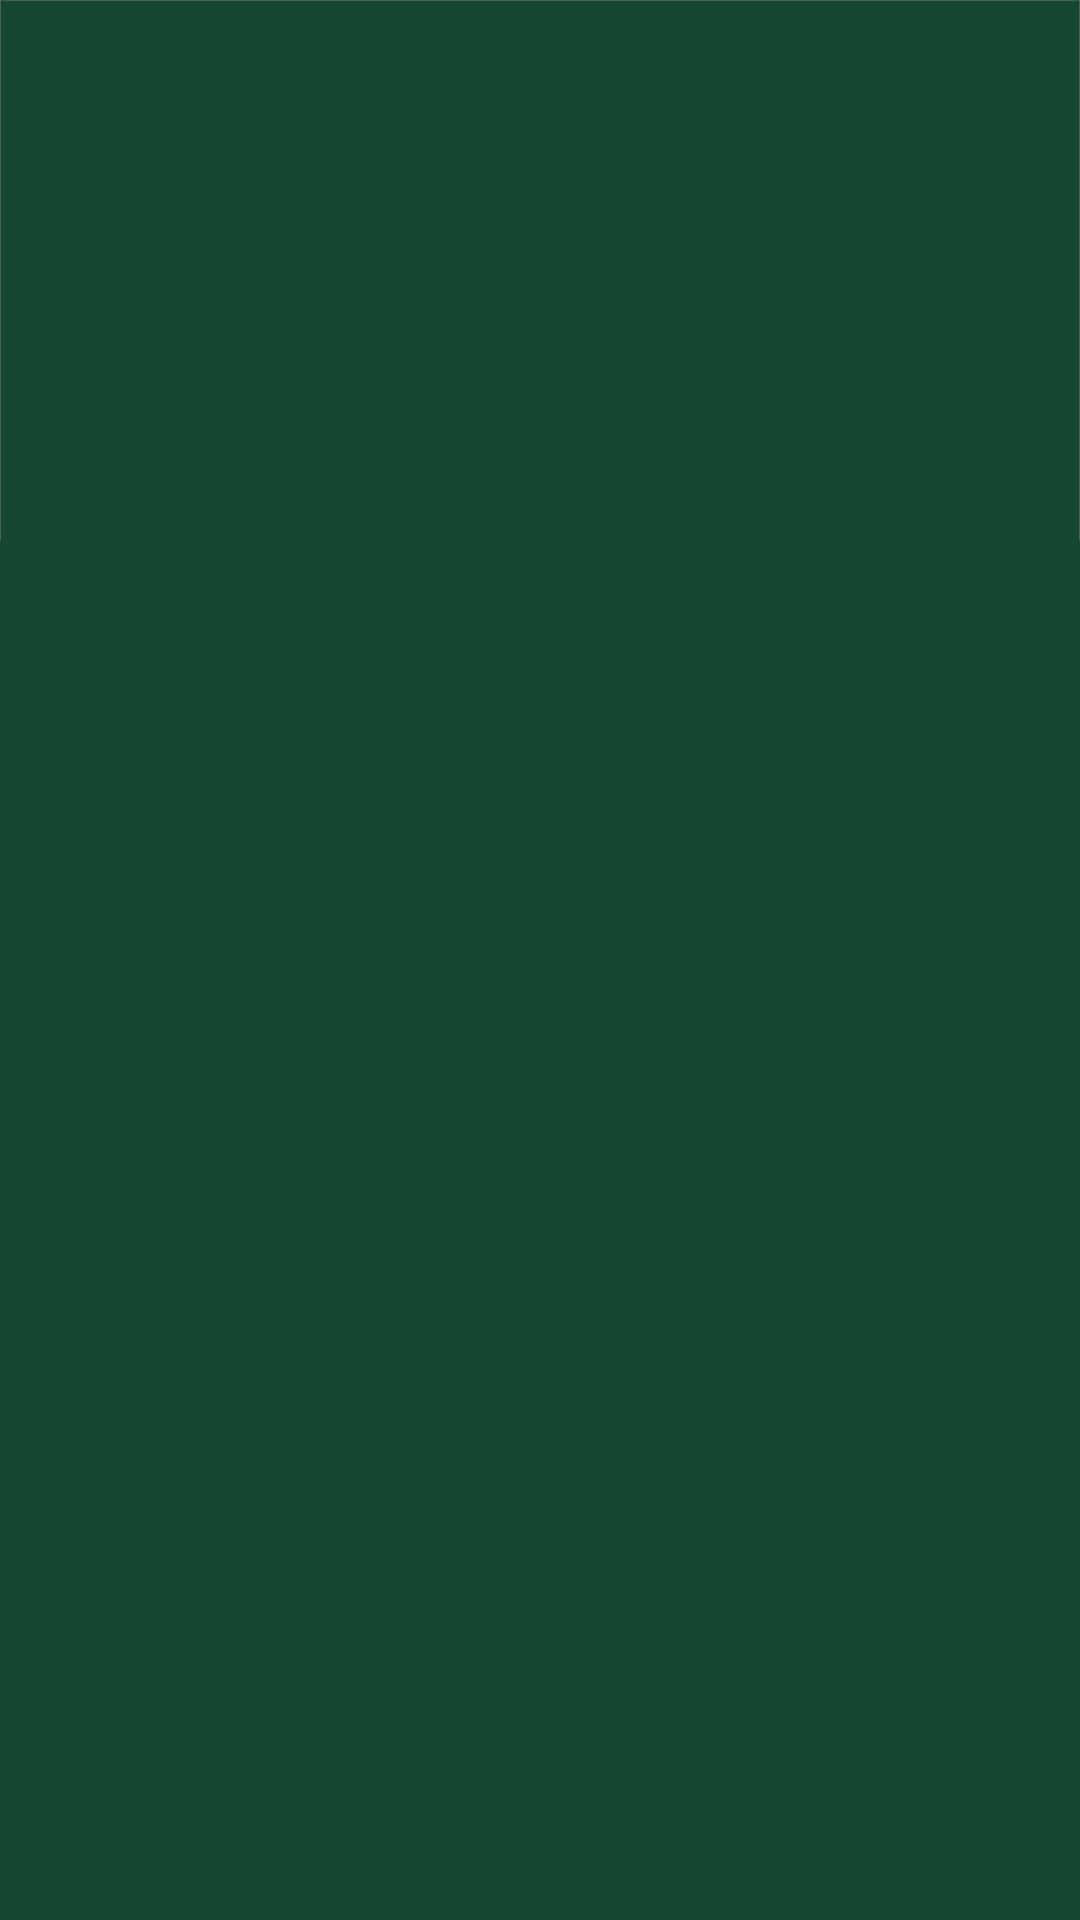 Bildhelle Einfarbige Grüne Hintergrund